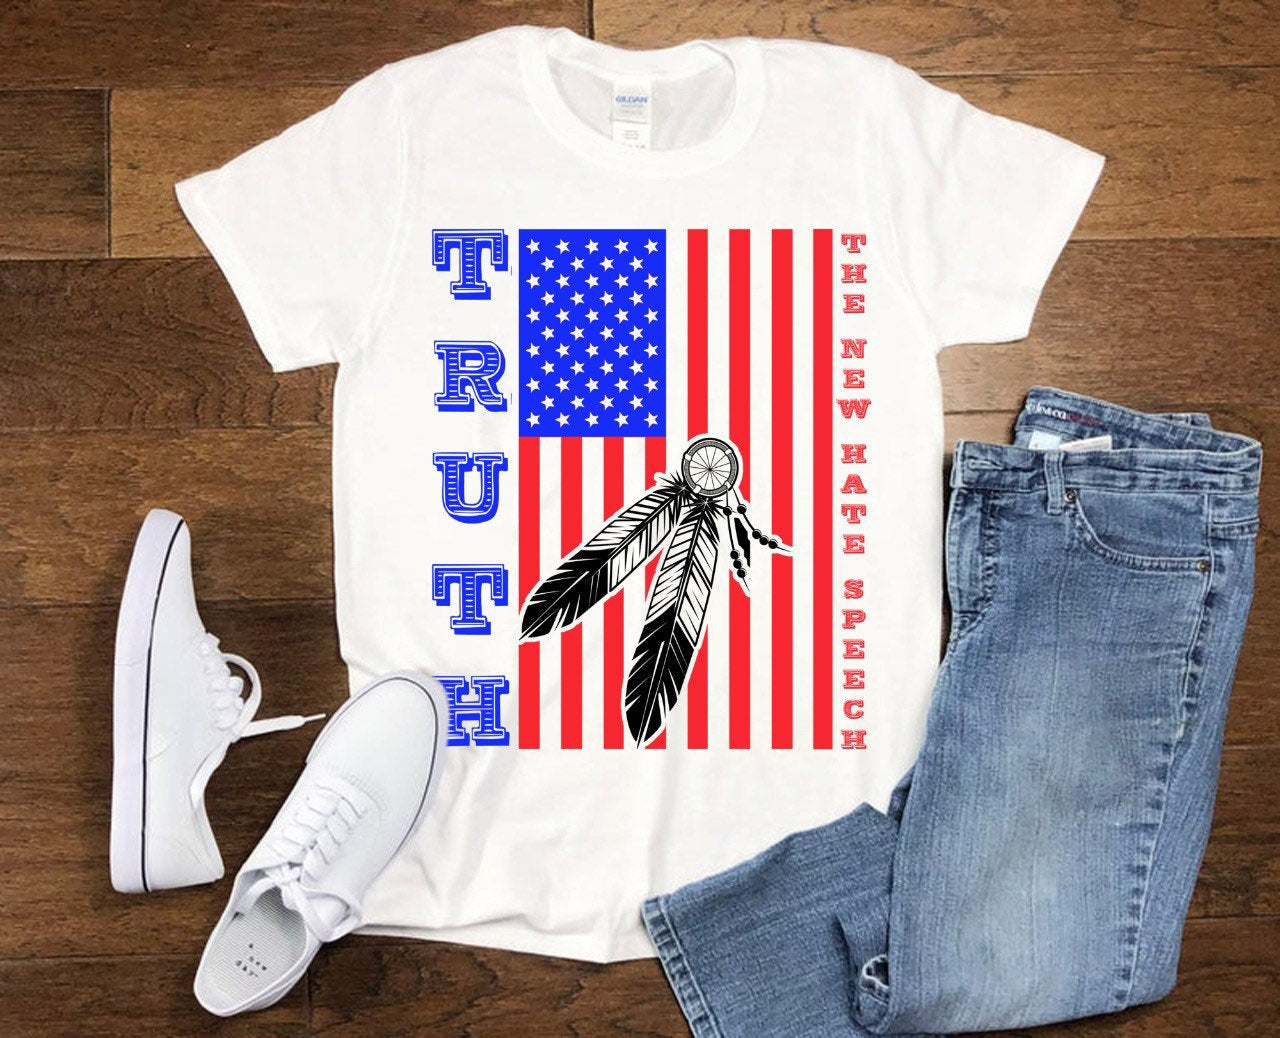 Sandhed Den nye hadetale | Fjer | American Flag T-shirts, Politisk Korrekthed, Konservative Republikanske T-shirts, Vælgerpolitik, Stemmetrøje - plusminusco.com